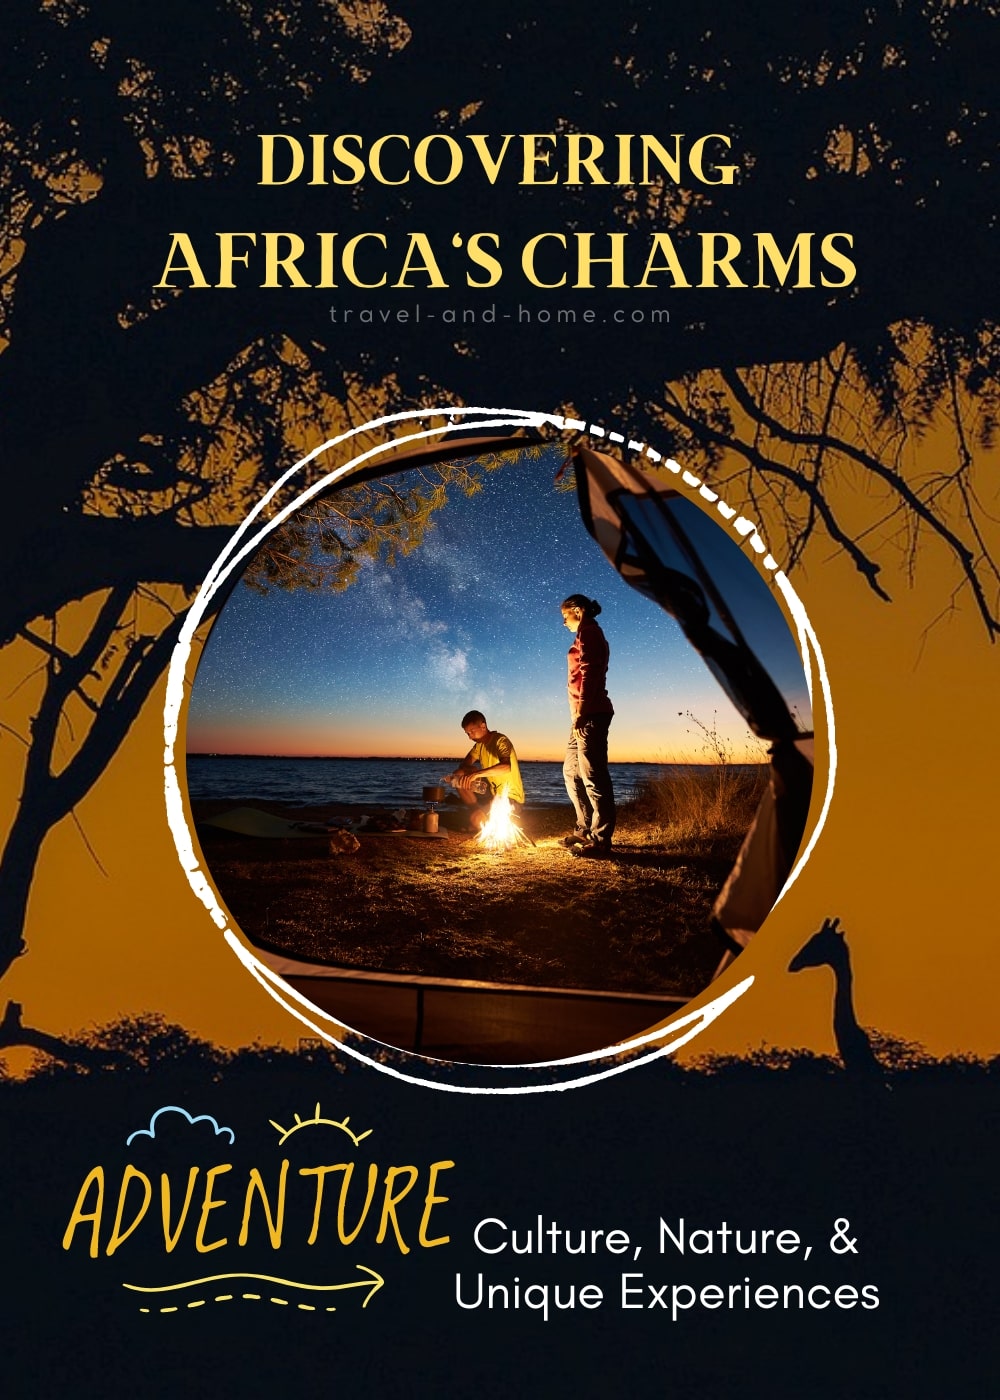 Explore Africa, Culture, Nature, Unique Experiences, #travelandhome min